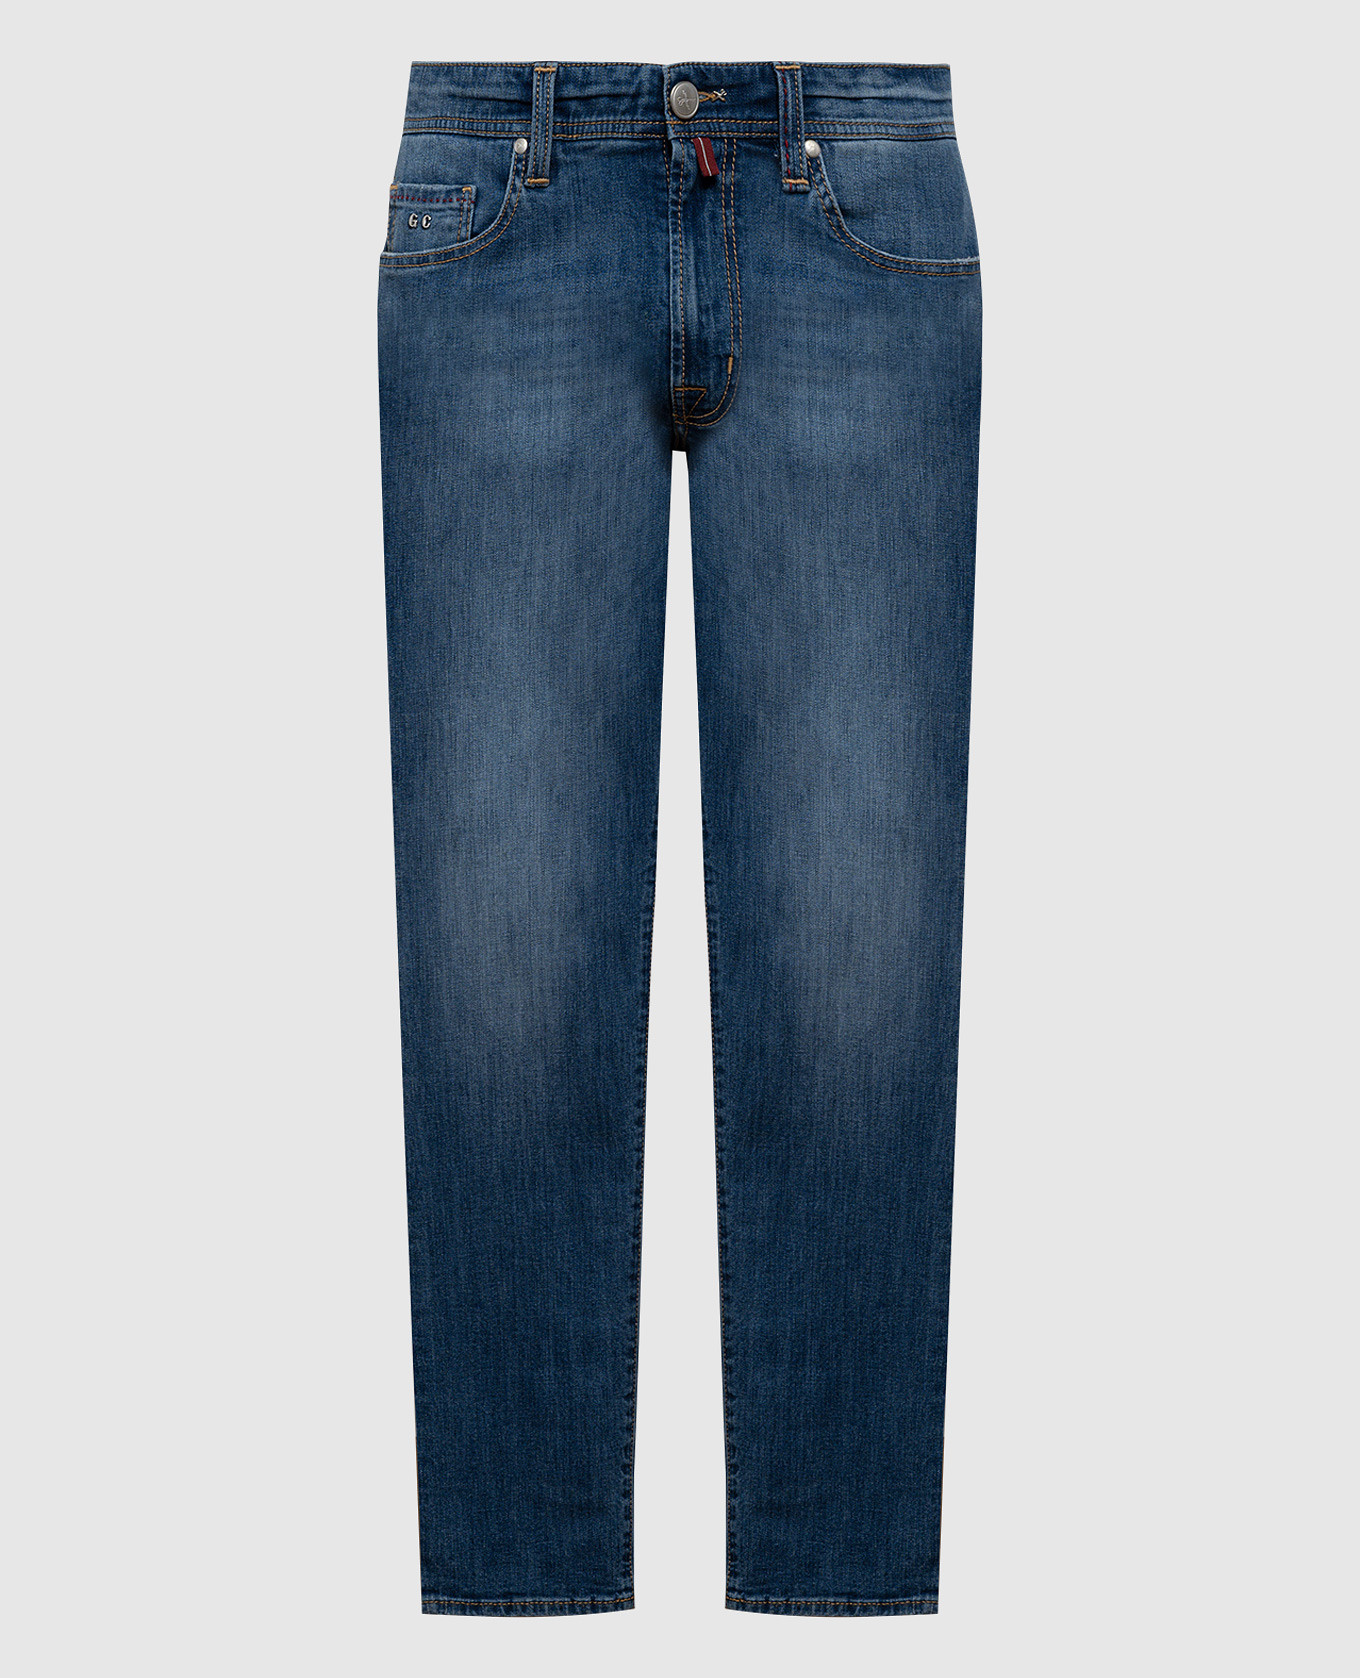 Синие джинсы MICHELANGELO с эффектом потертости